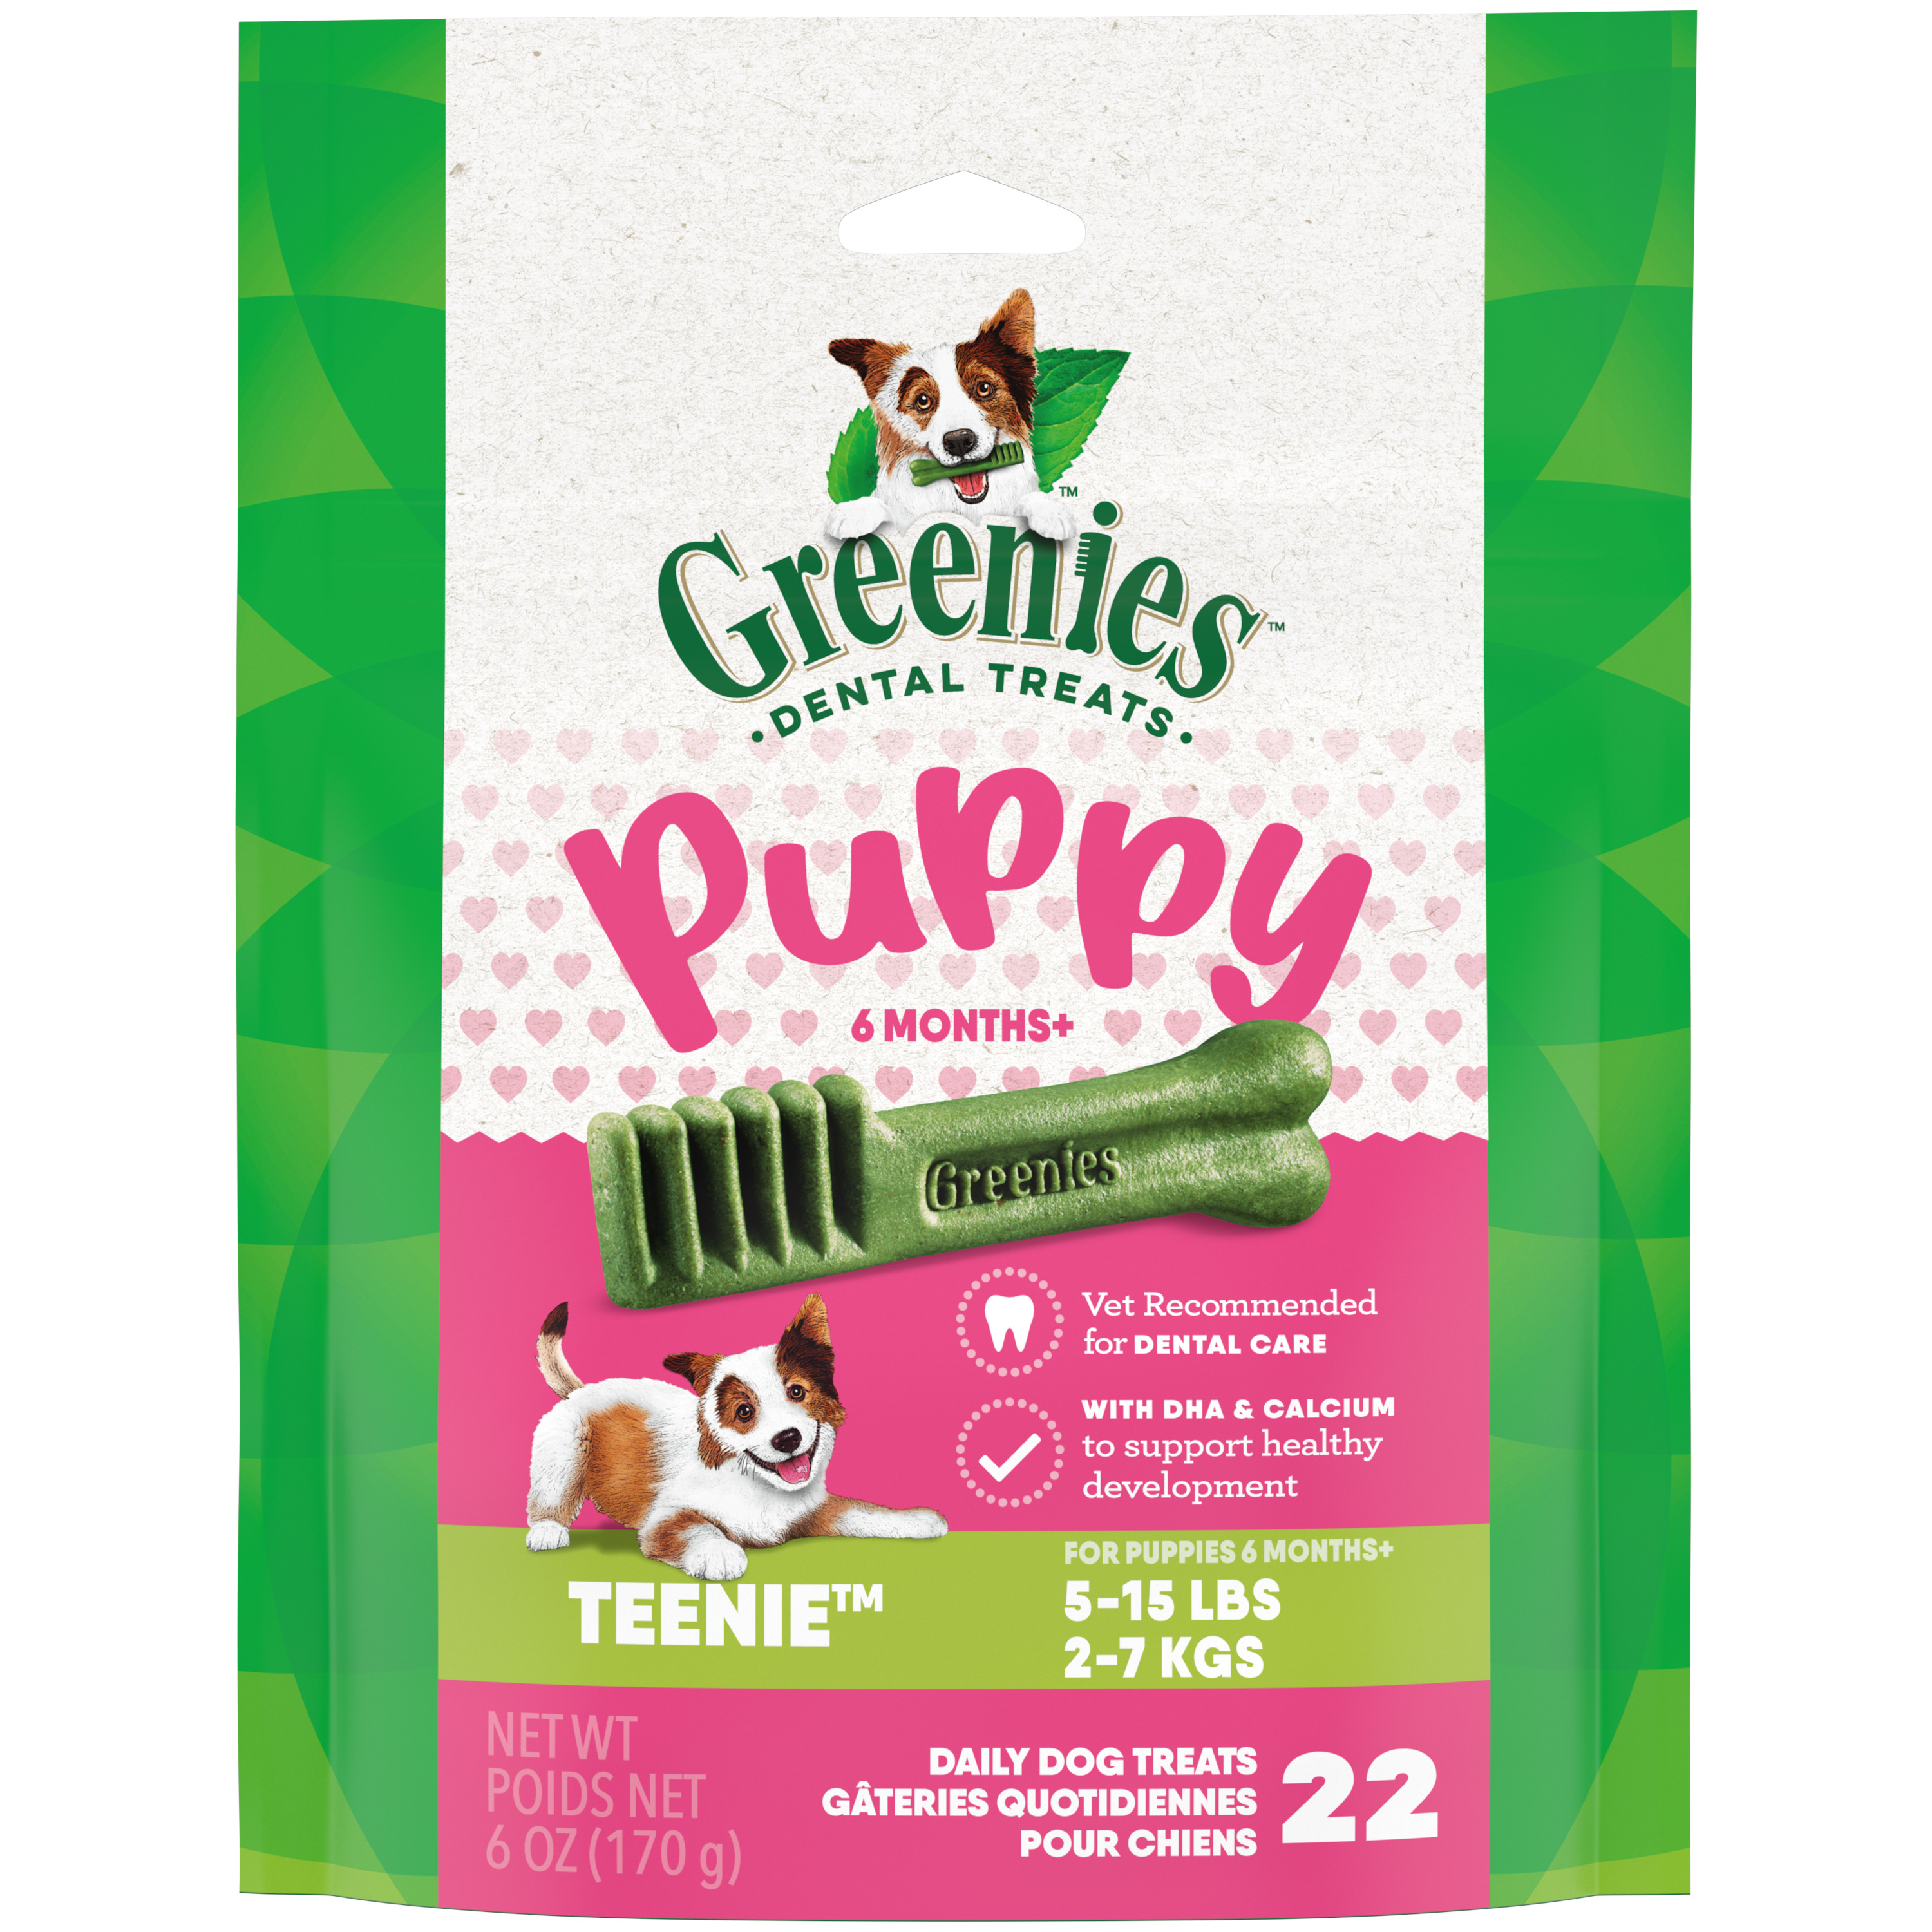 6oz Greenies PUPPY Teenie Mini Treat Pack - Treats